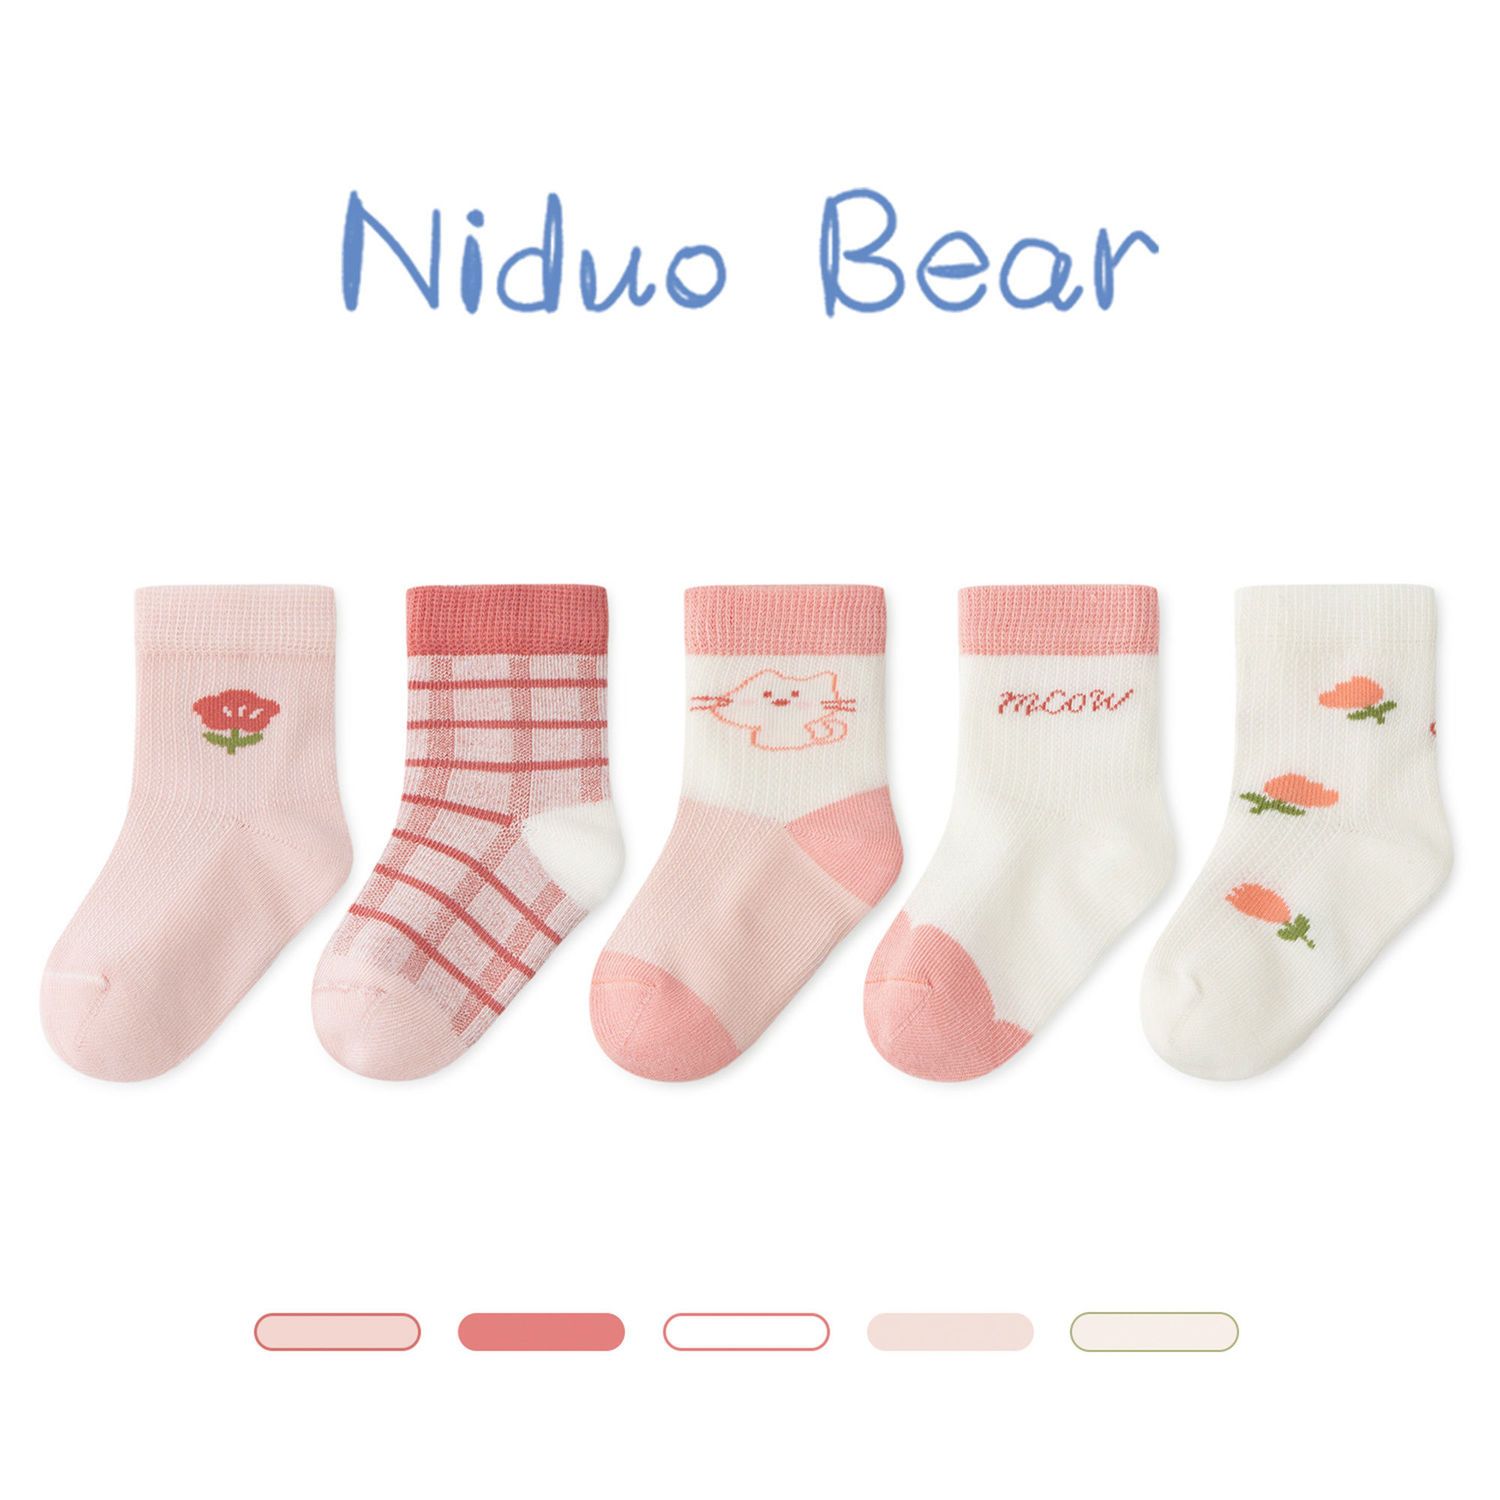 尼多熊2022夏季薄款儿童袜子棉质宝宝袜可爱超萌女童袜子透气春夏